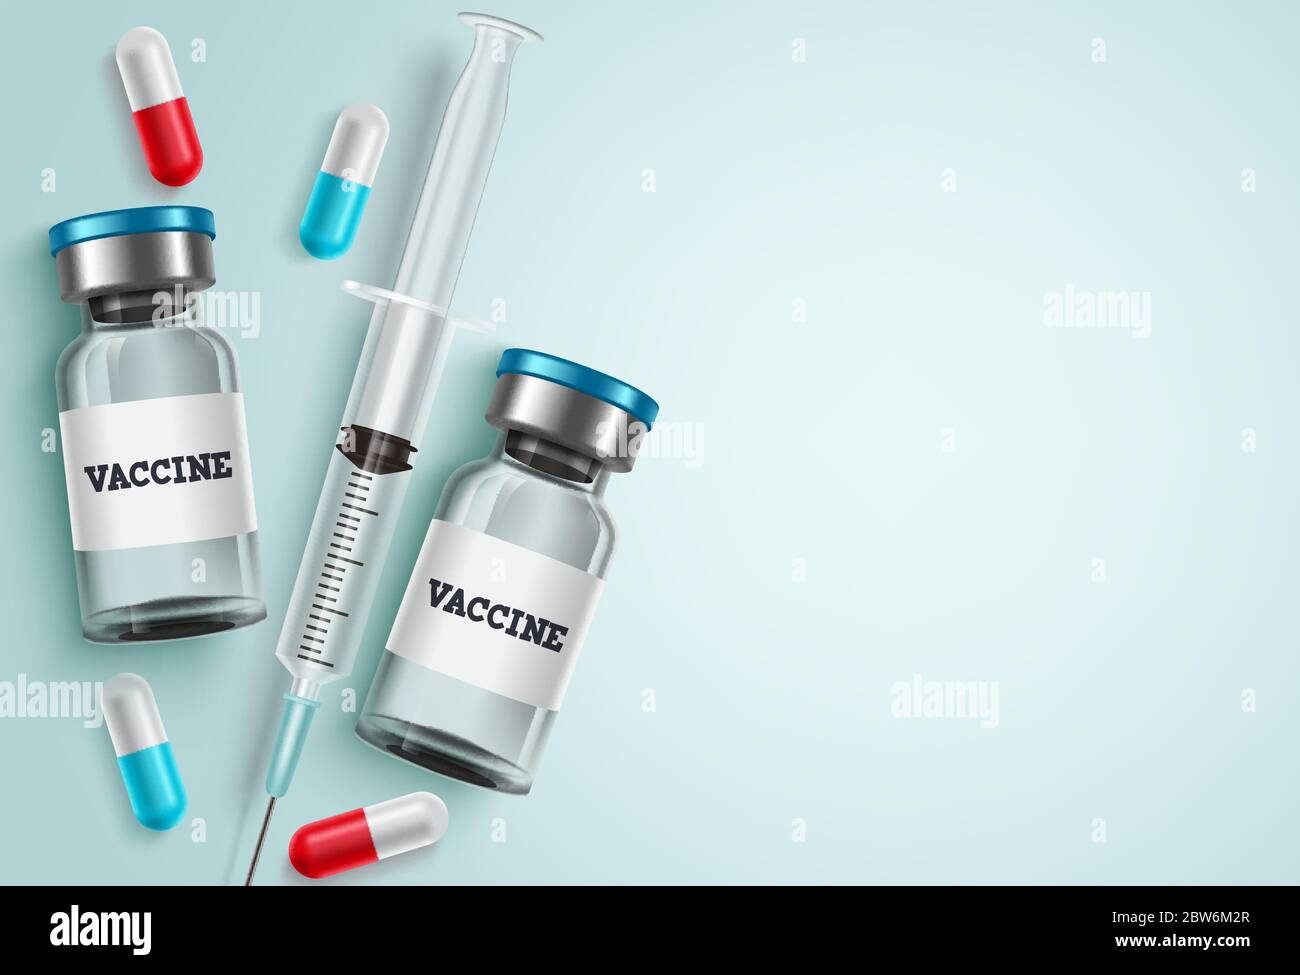 Medizin Impfstoff Vektor Hintergrund. Impfstoffflasche, Spritzenspritze und Kapsel Medizin mit weißen leeren Leerraum für Text für Covid-19 Virus Stock Vektor